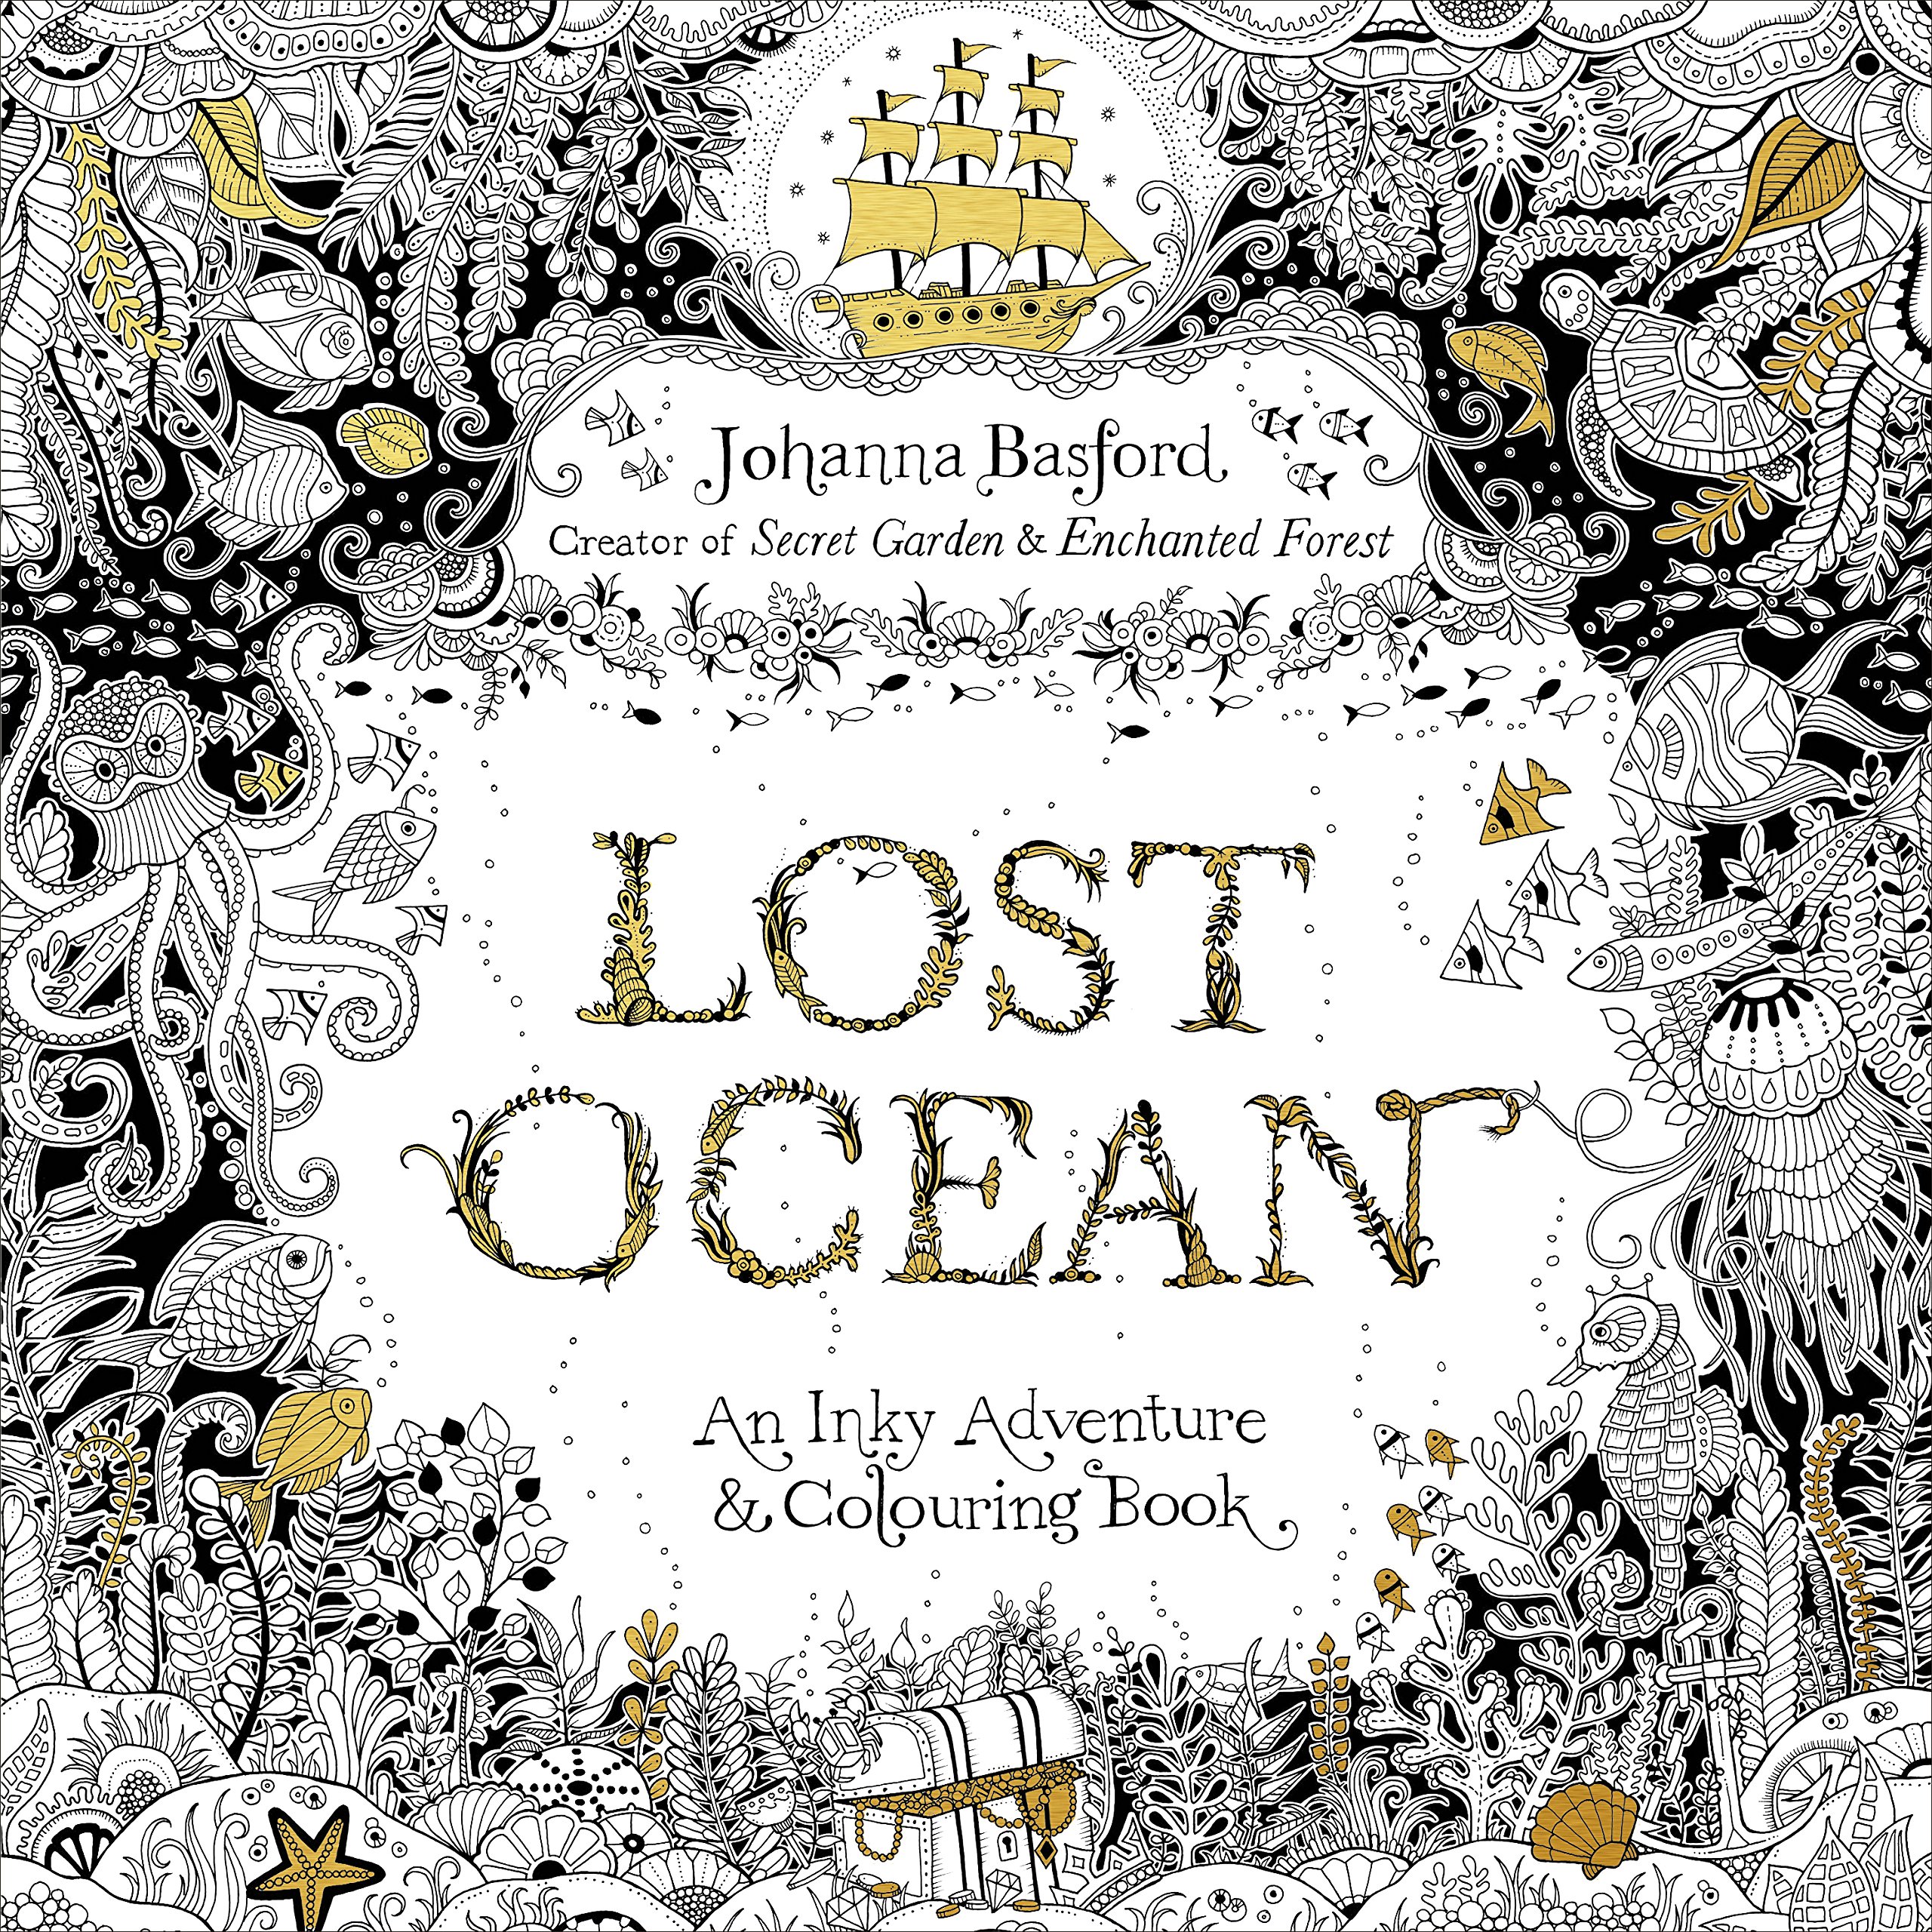 良書網 Lost Ocean: An Inky Adventure & Colouring Book (英語) 出版社: VirginBooks Code/ISBN: 9780753557150